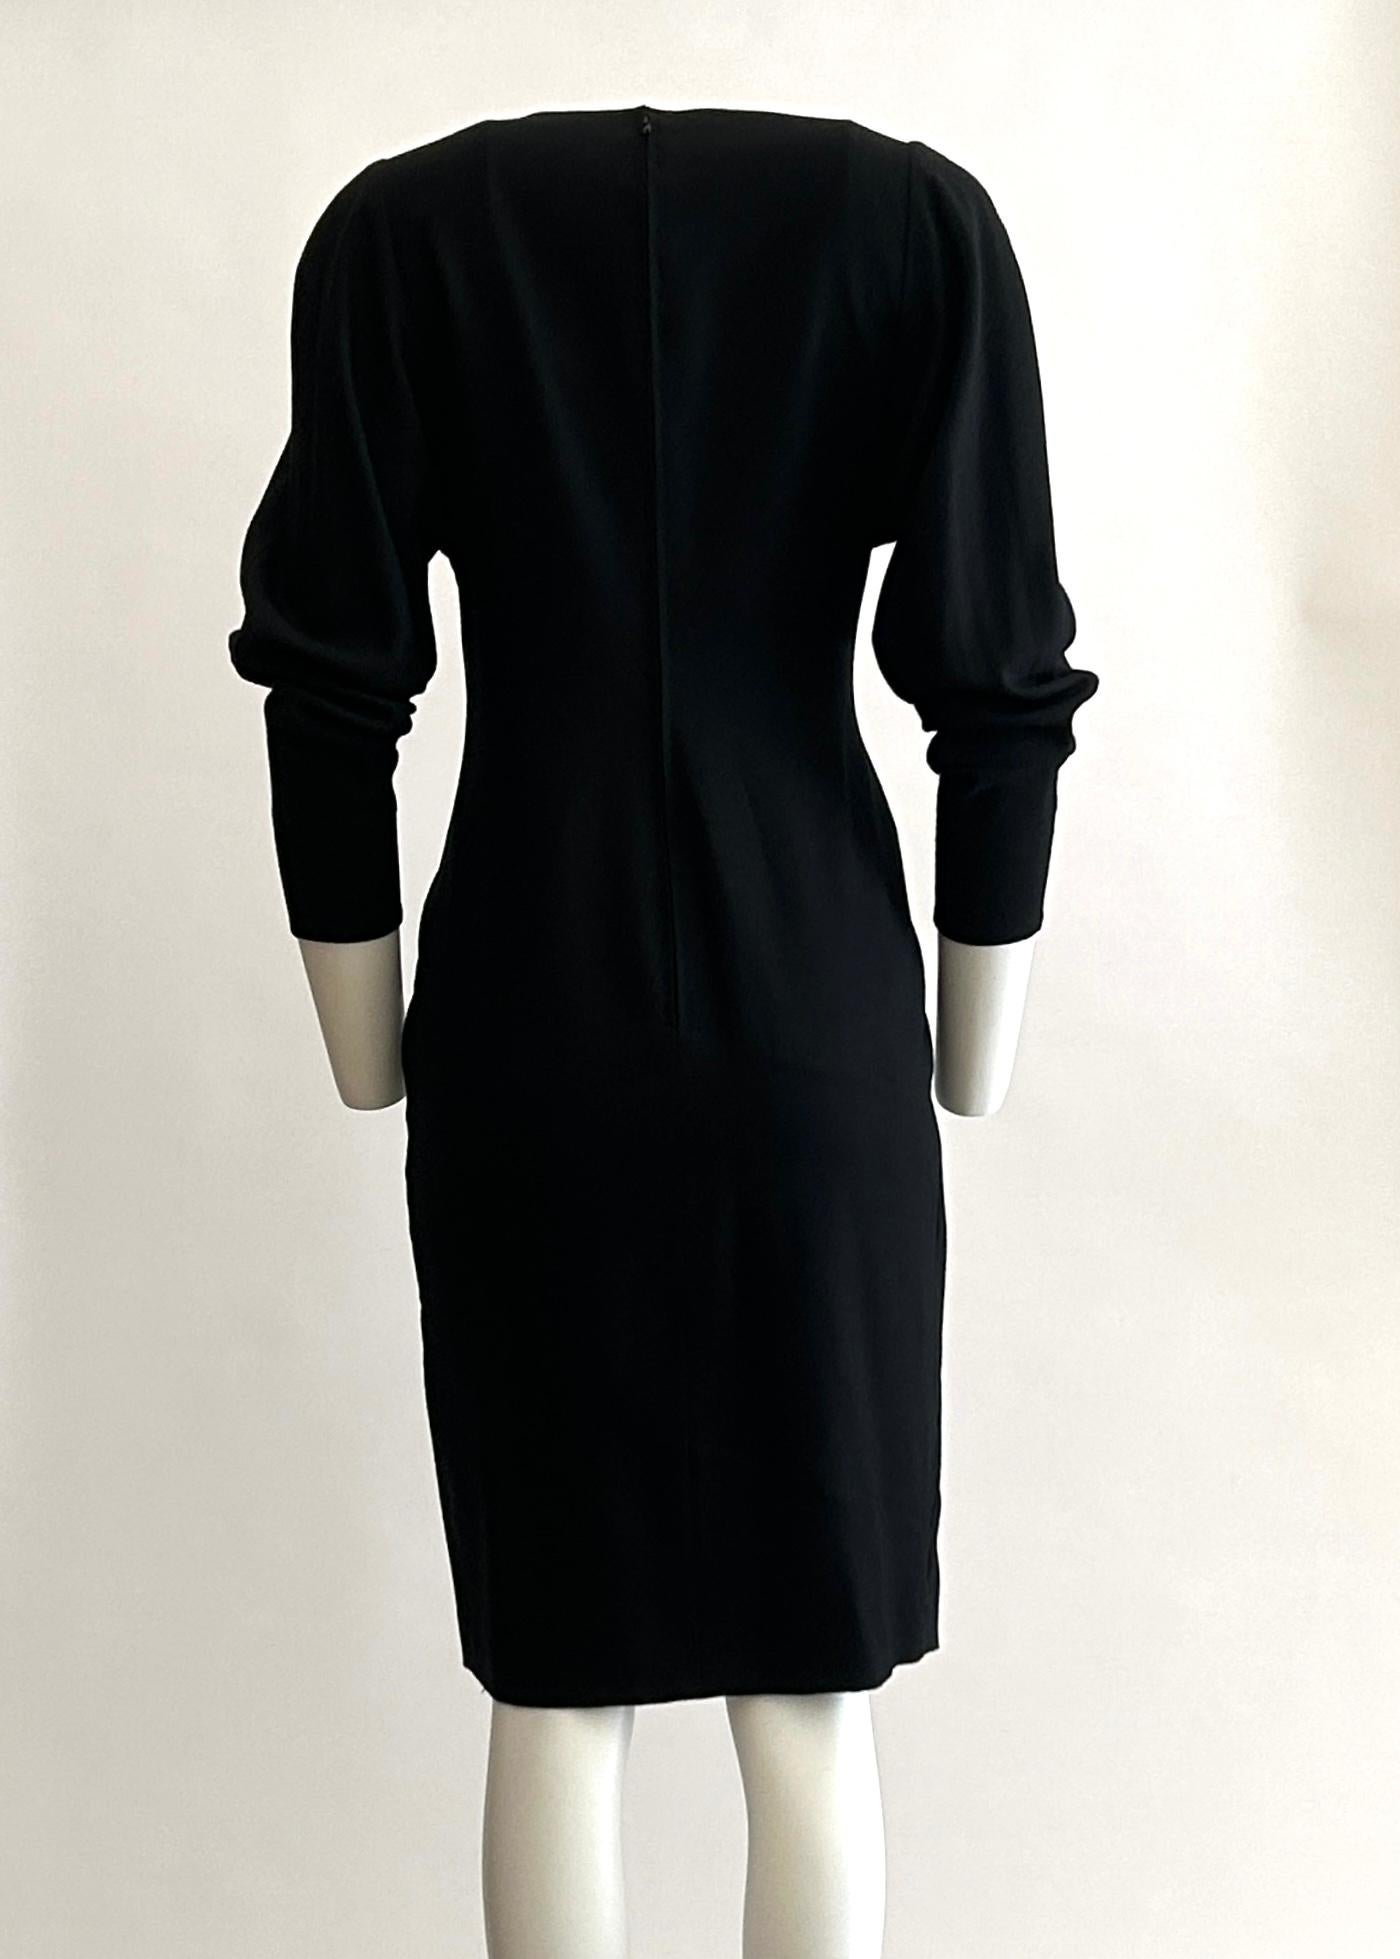 Women's Karl Lagerfeld Vintage 1980s Ballerina Dancer Embellished Black Dress  For Sale